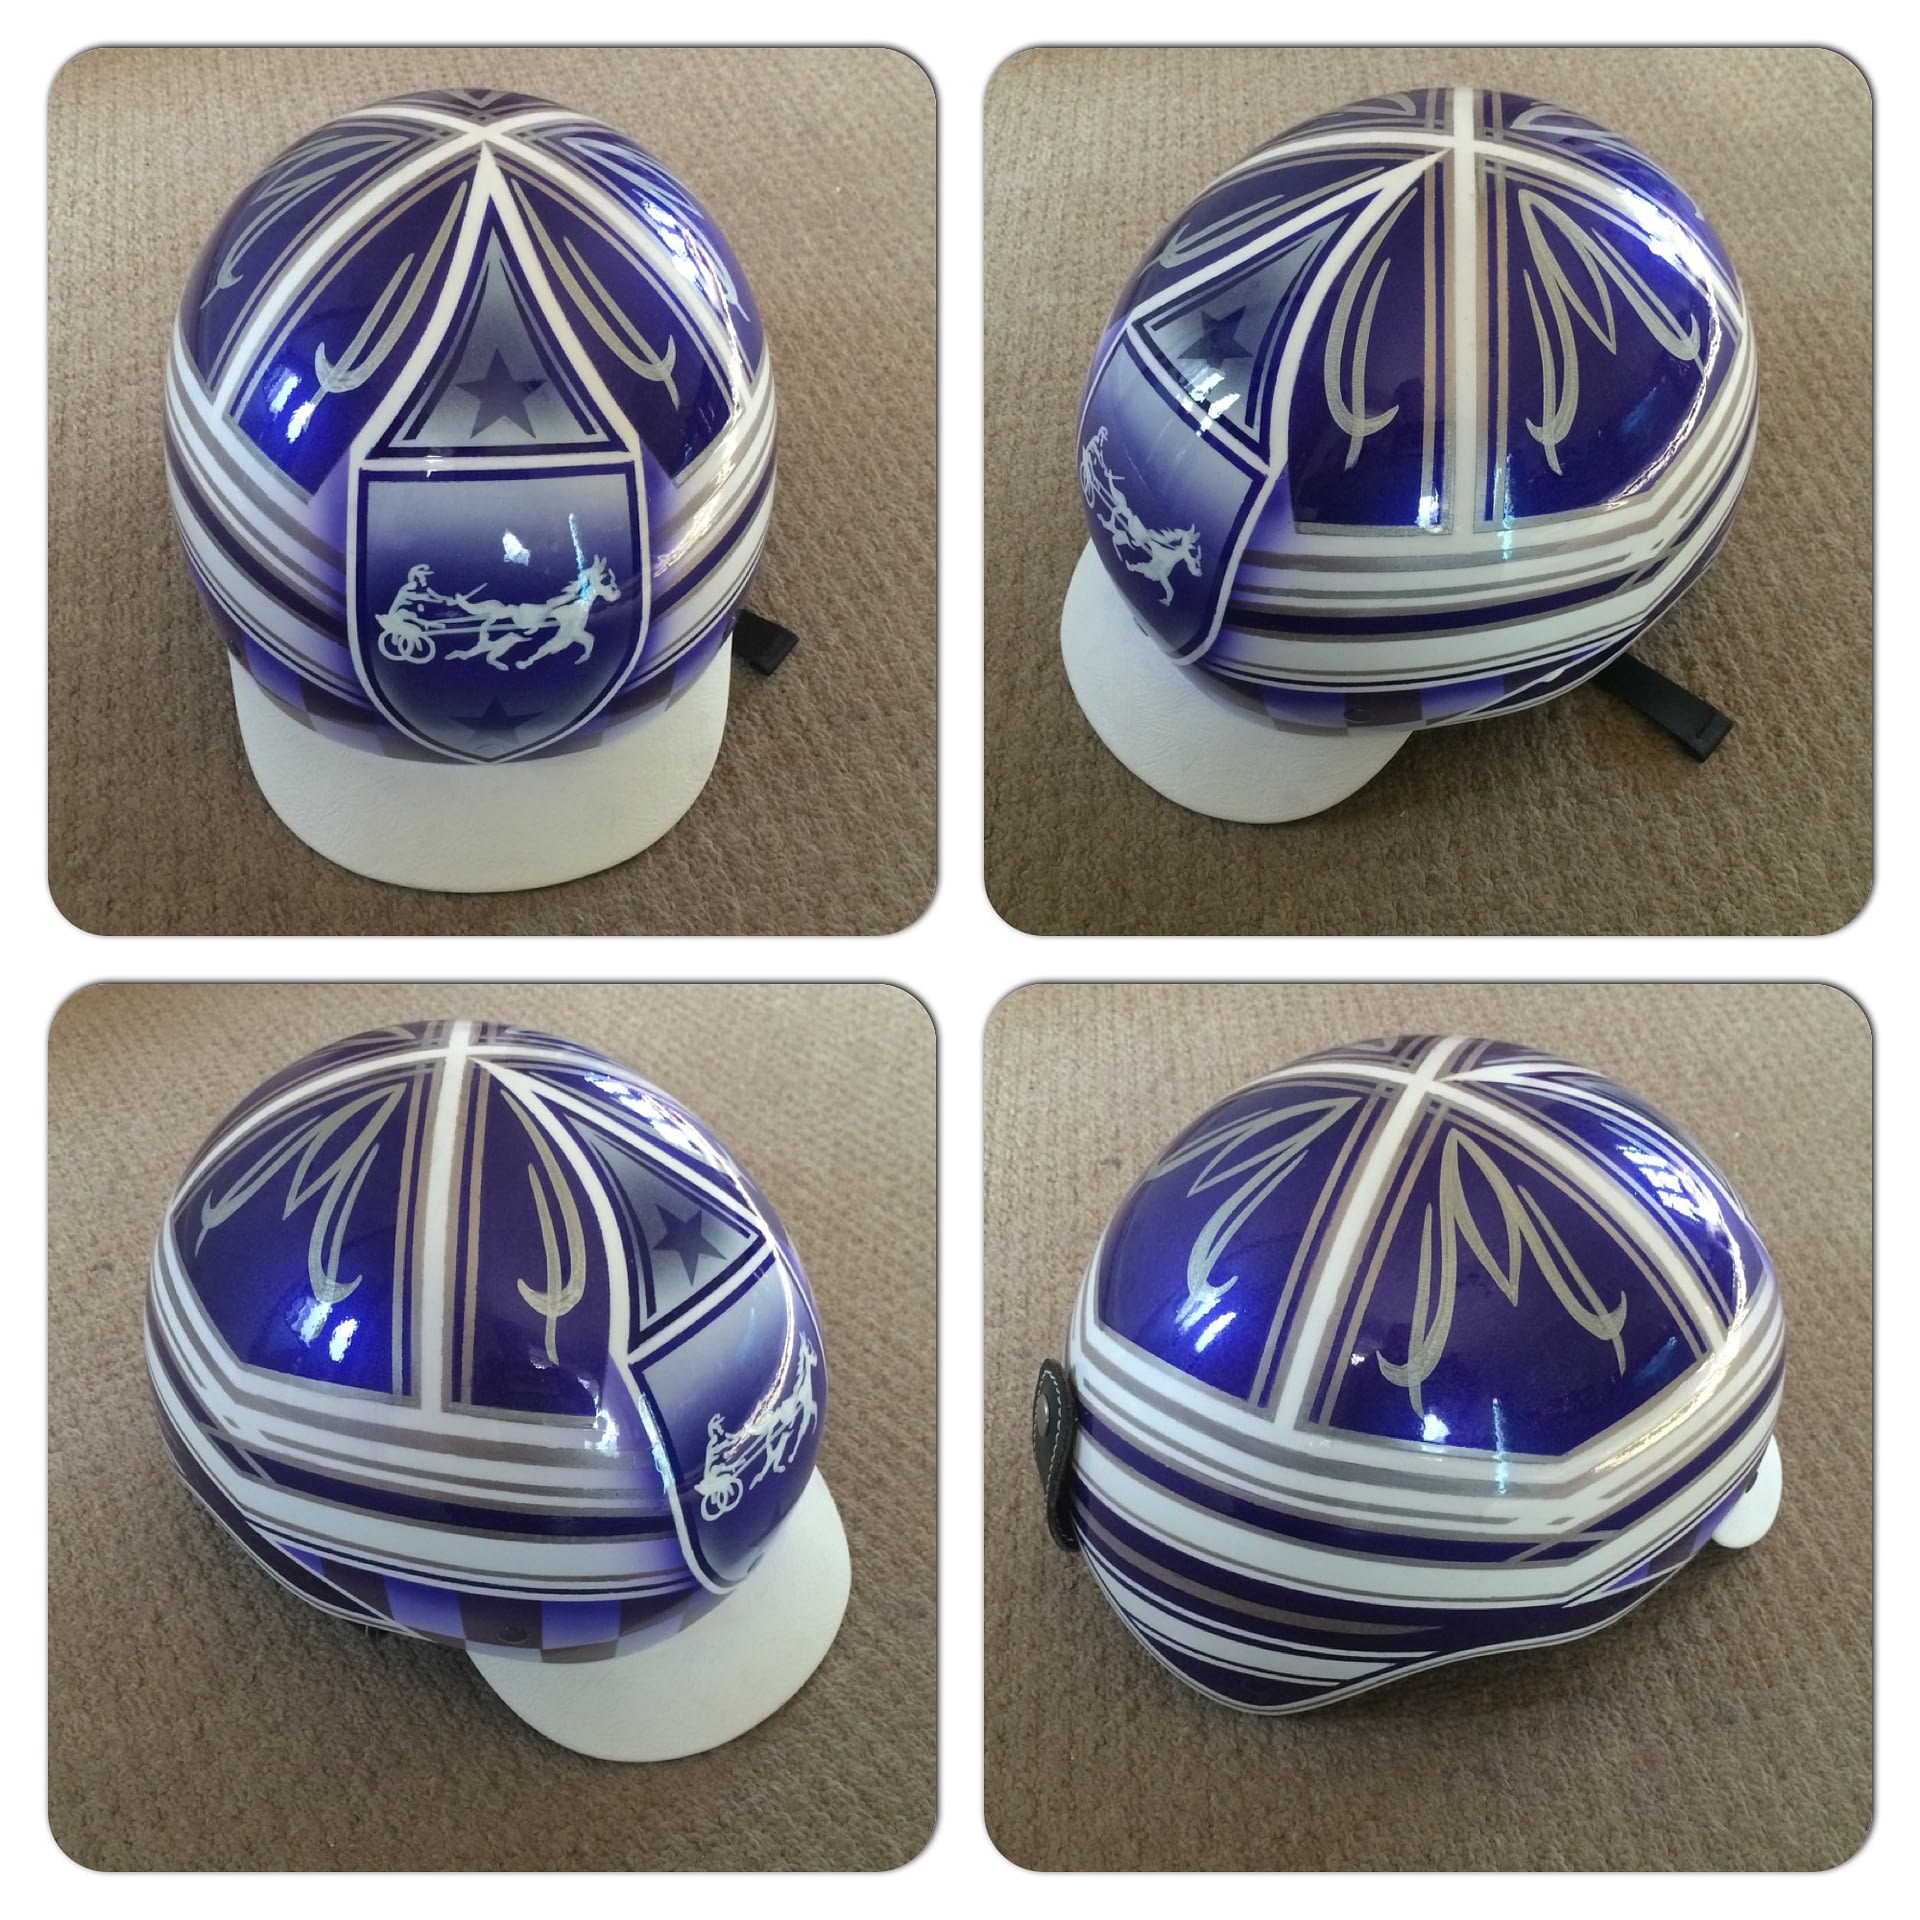 Custom Painted Trotting / Trap Racing Helmet